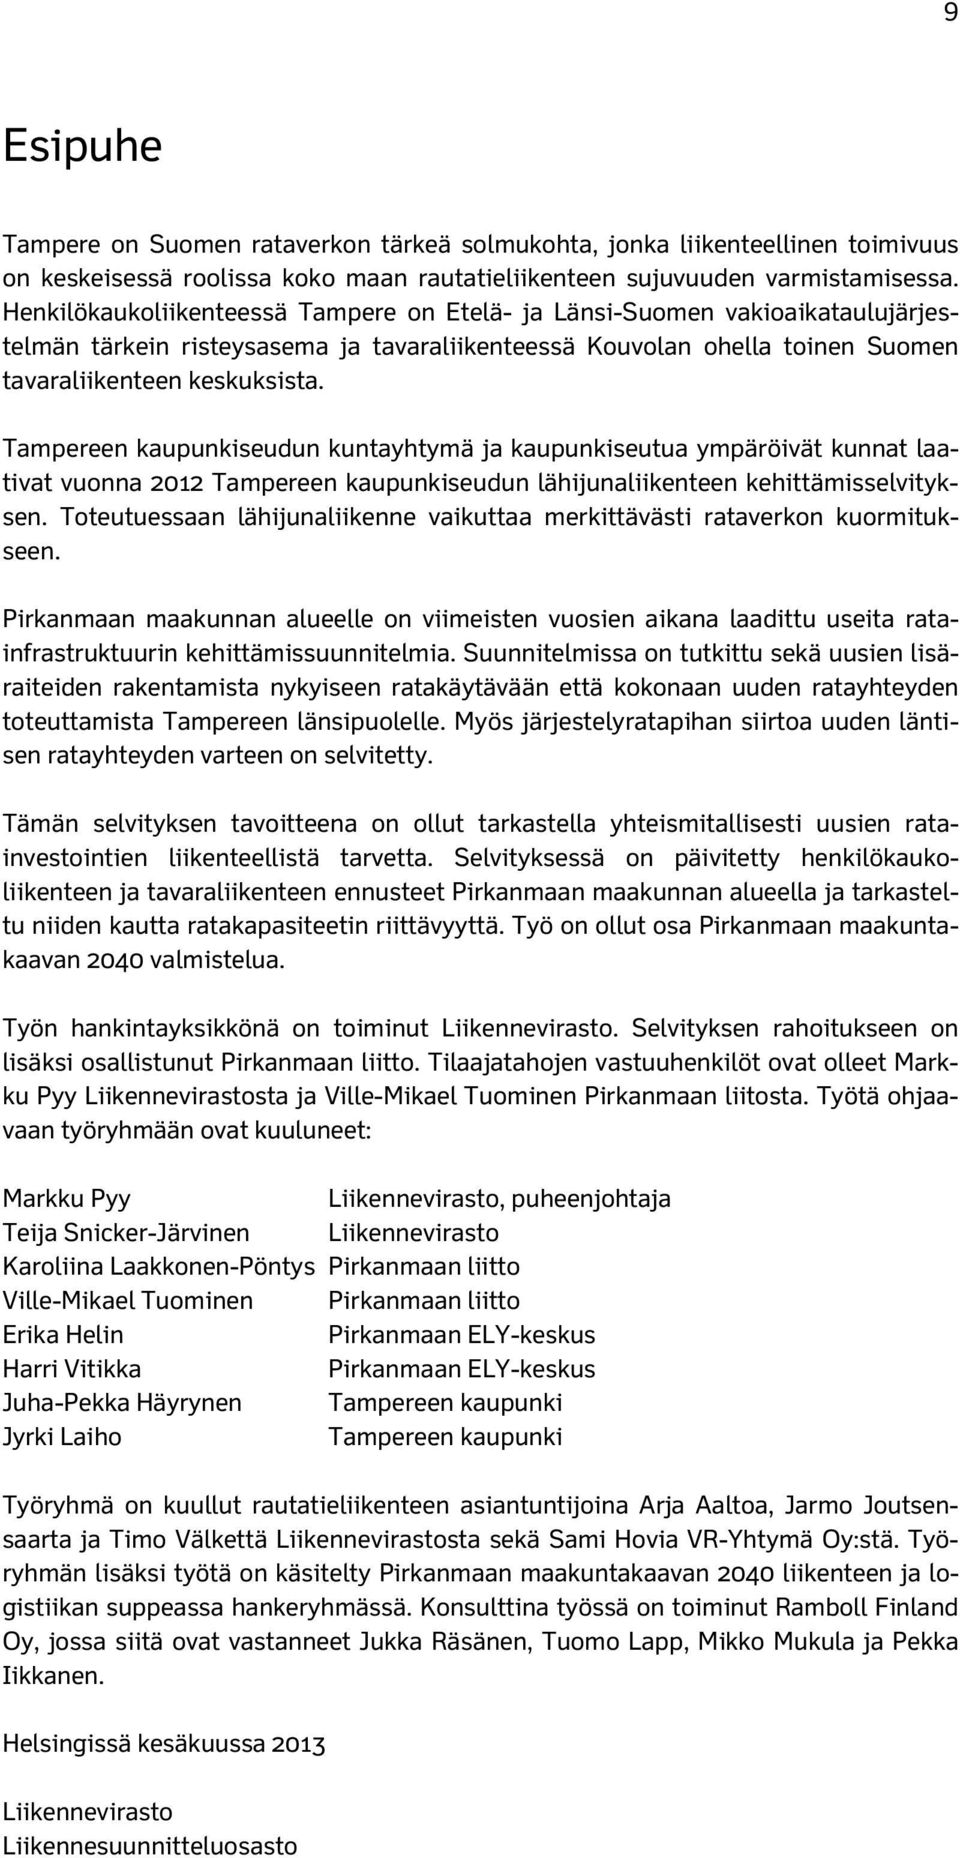 Tampereen kaupunkiseudun kuntayhtymä ja kaupunkiseutua ympäröivät kunnat laativat vuonna 2012 Tampereen kaupunkiseudun lähijunaliikenteen kehittämisselvityksen.